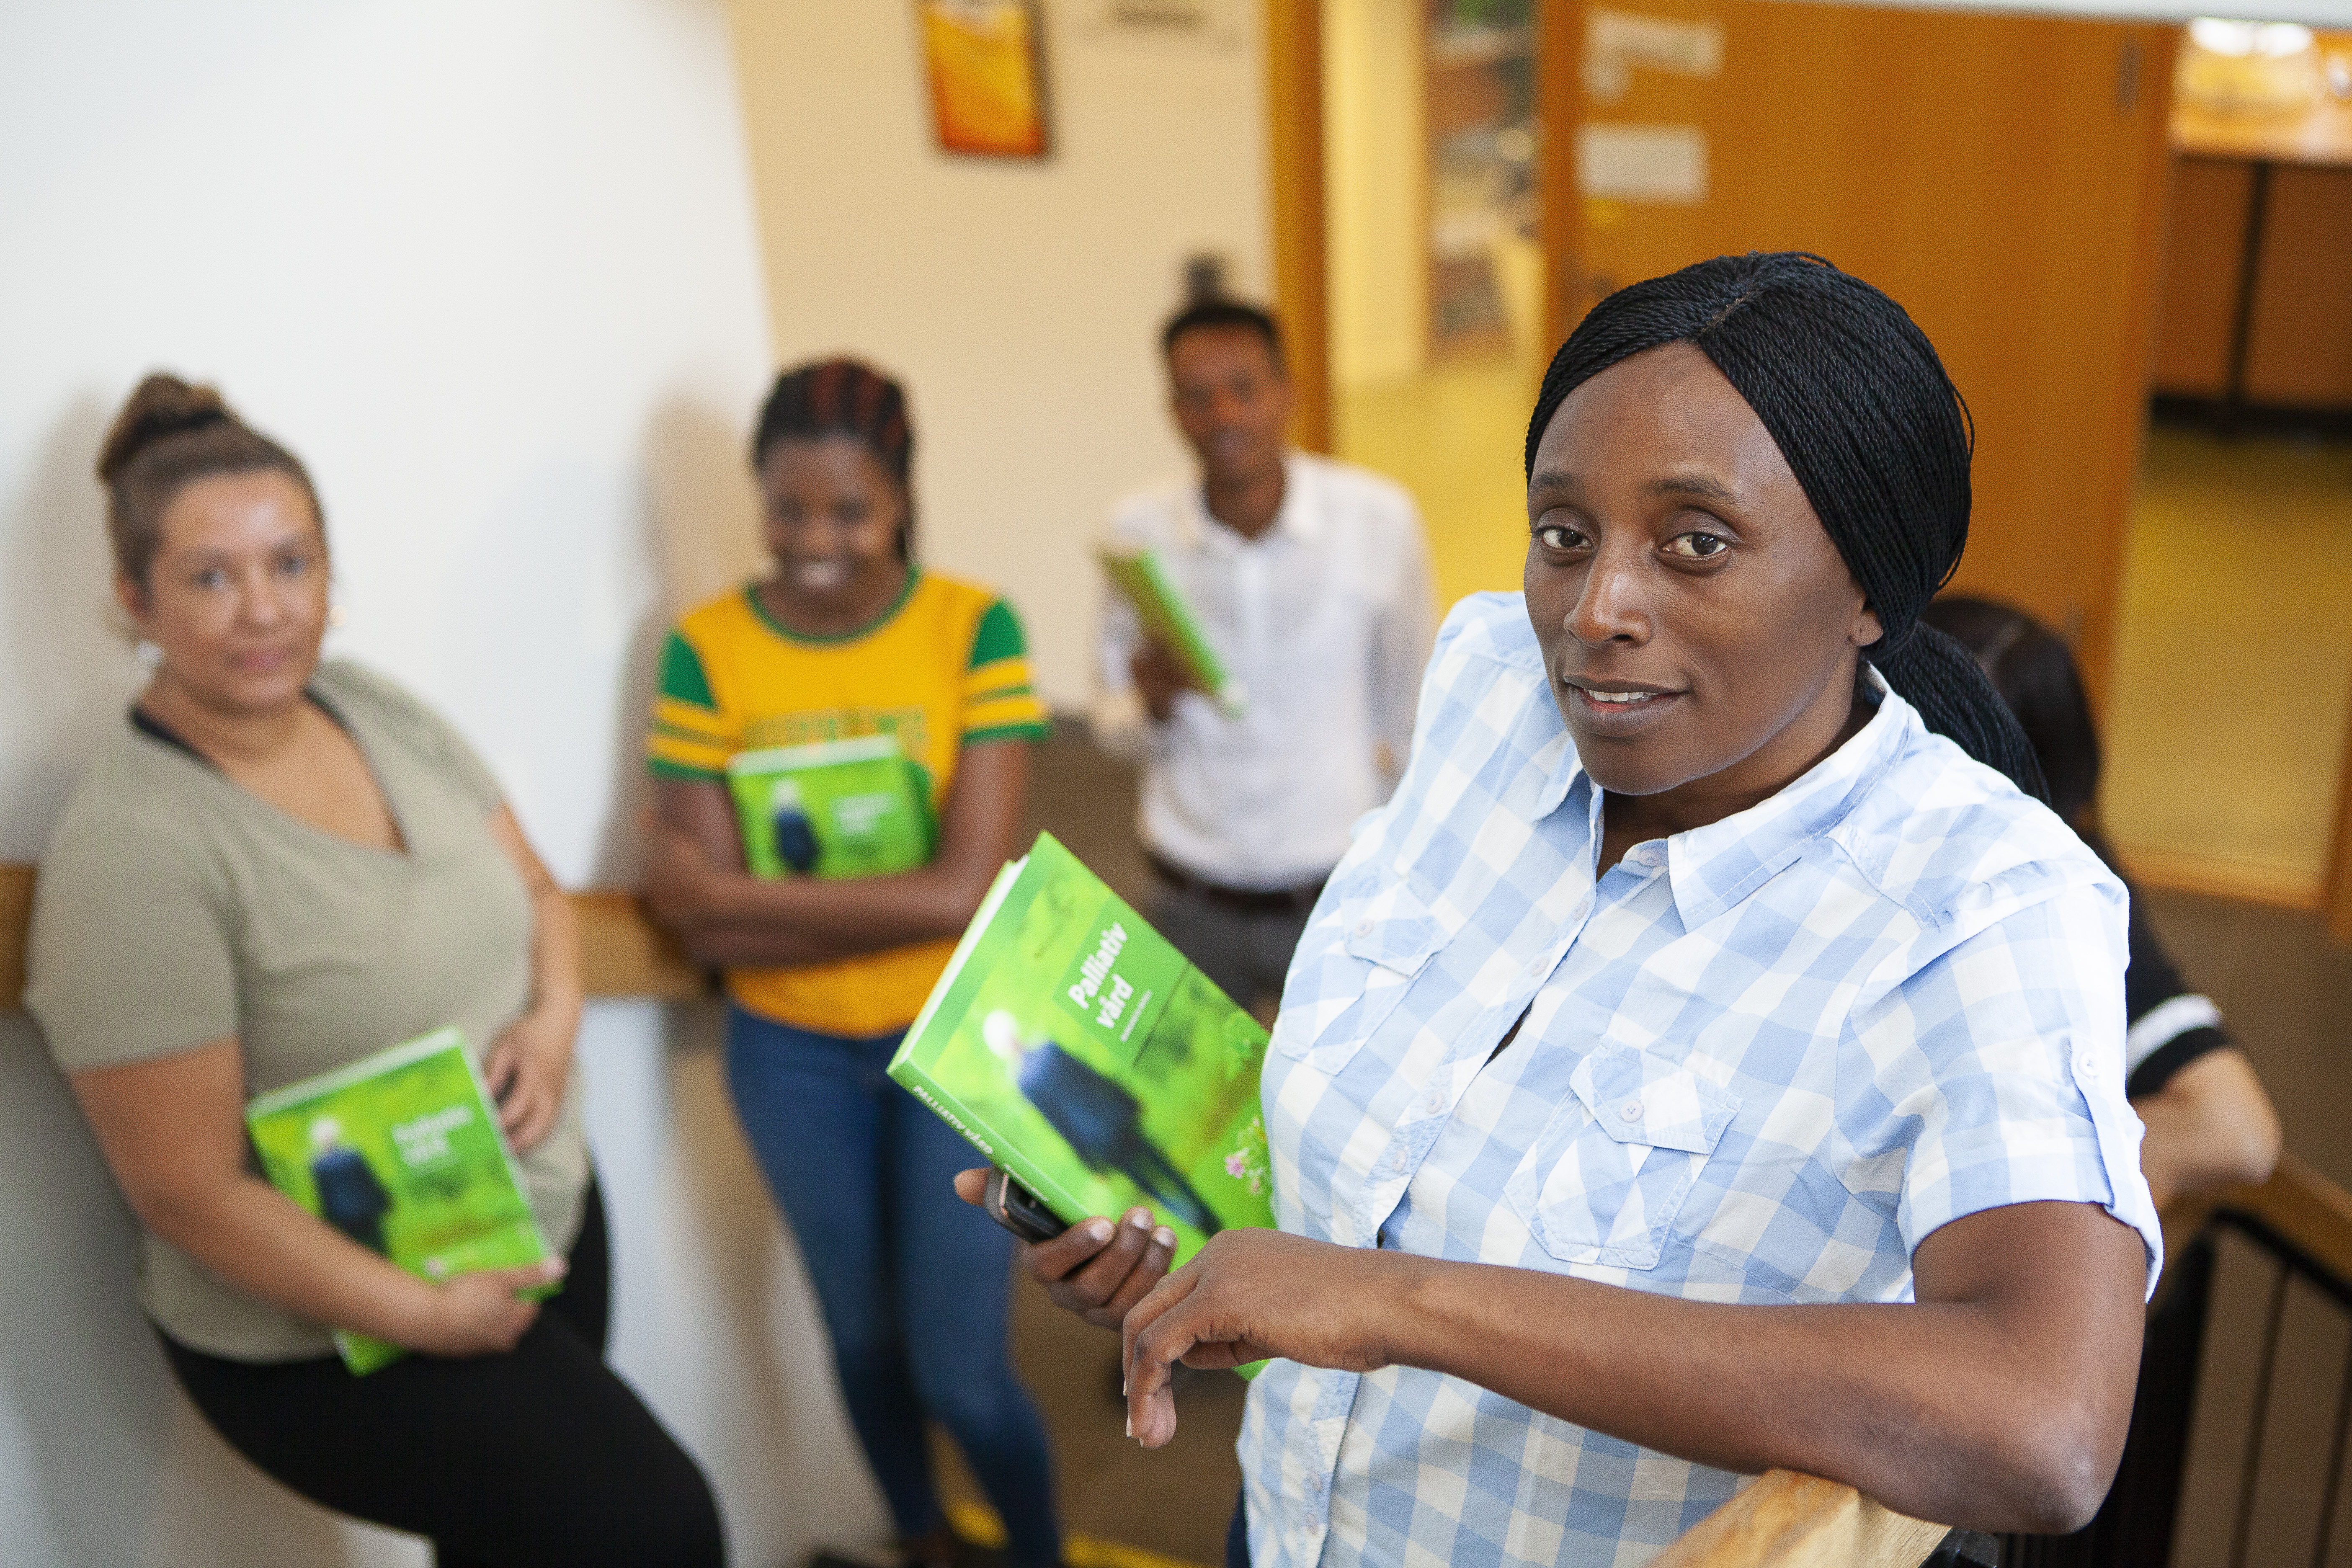 En person med en grön bok om palliativ vård och tre andra personer i bakgrunden